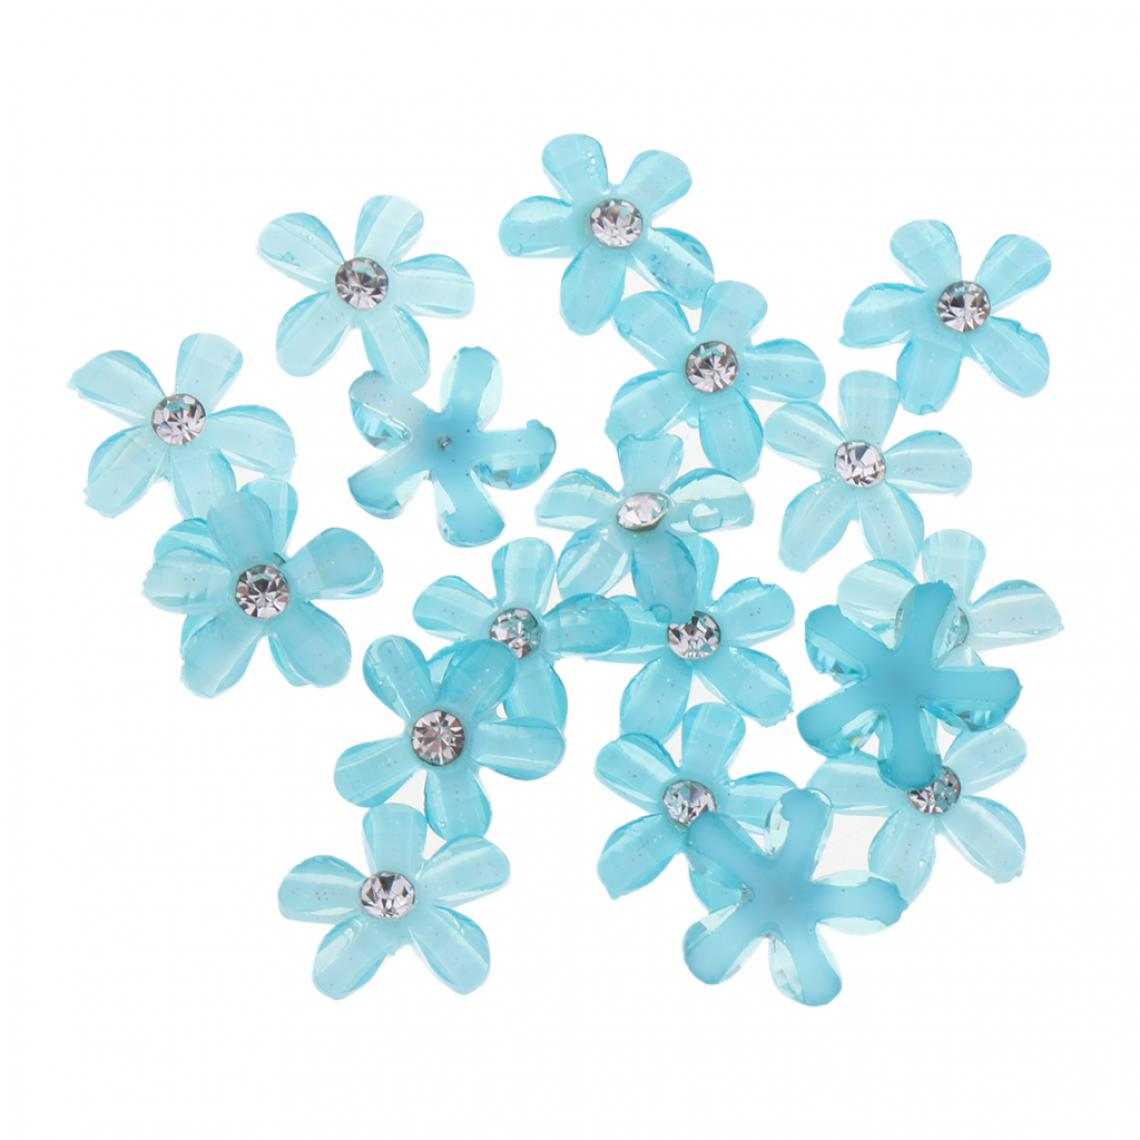 marque generique - 20 fleurs flatback bouton embellissements strass pour mariage bleu clair - Poignée de meuble